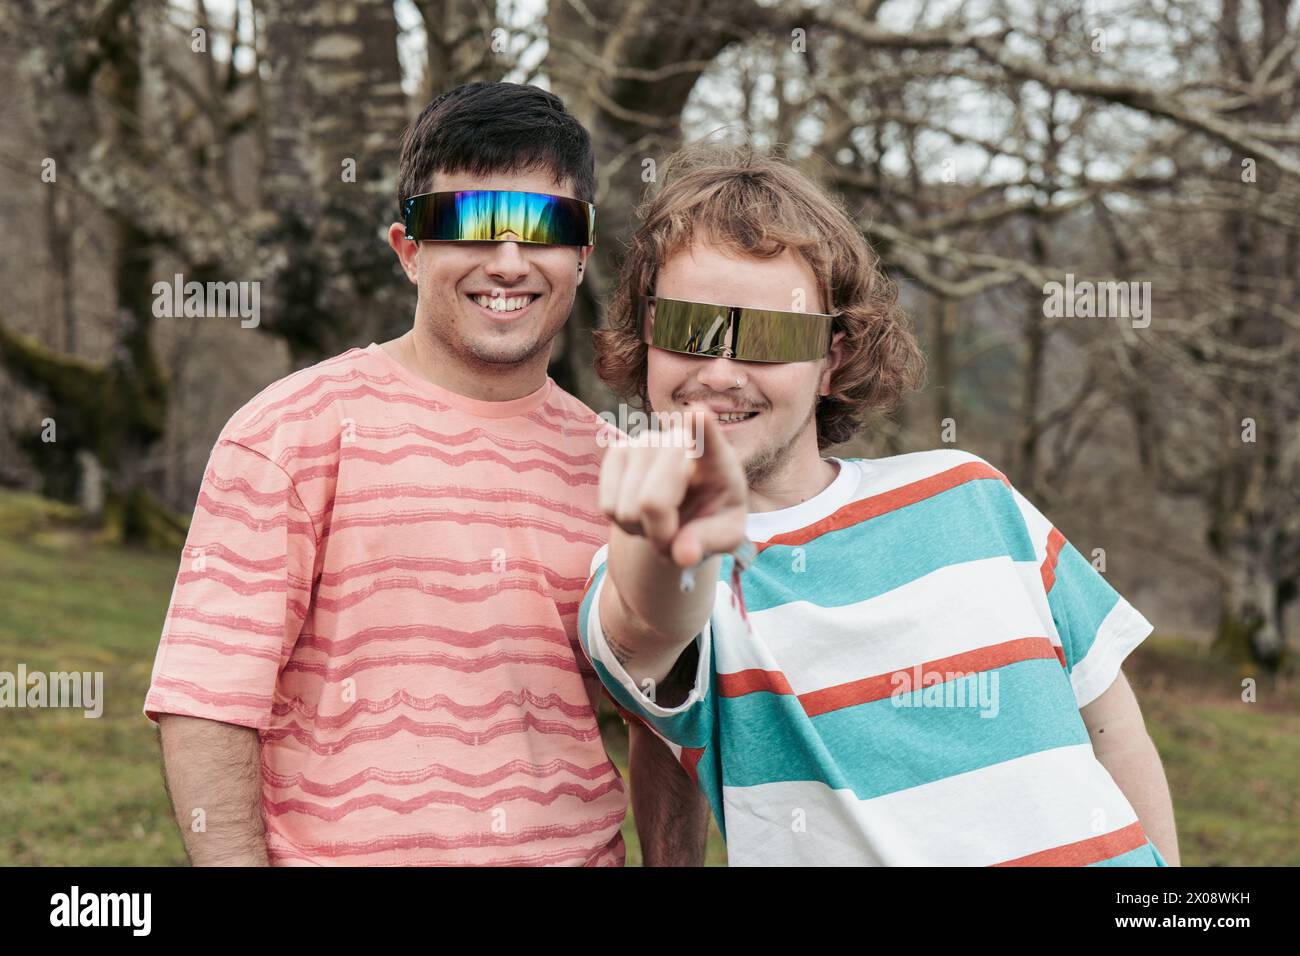 Una coppia allegra si impegna giocosamente con la fotocamera, con occhiali da sole riflettenti e sorrisi luminosi in un parco idilliaco Foto Stock